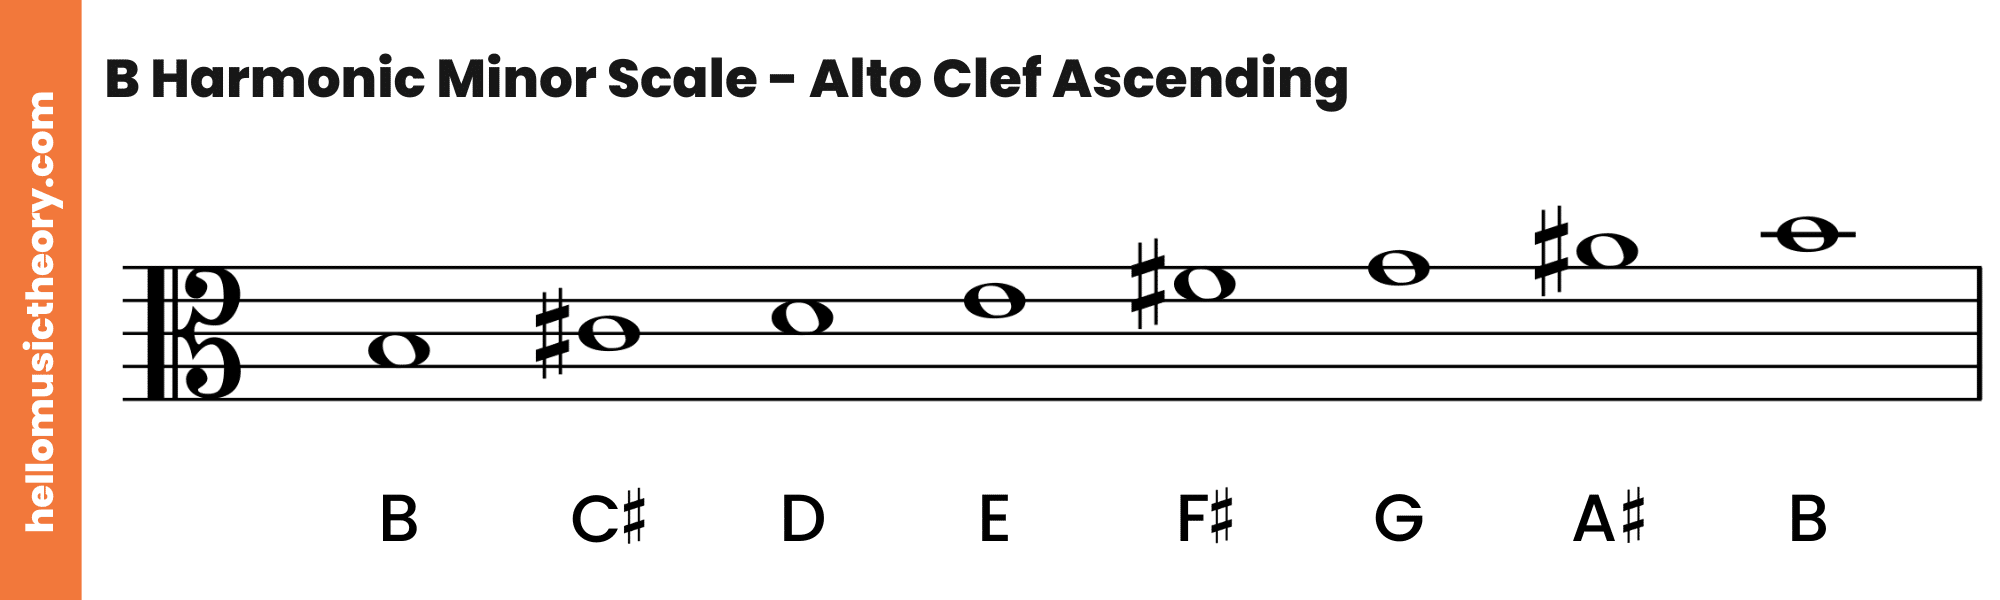 B Harmonic Minor Scale Alto Clef Ascending